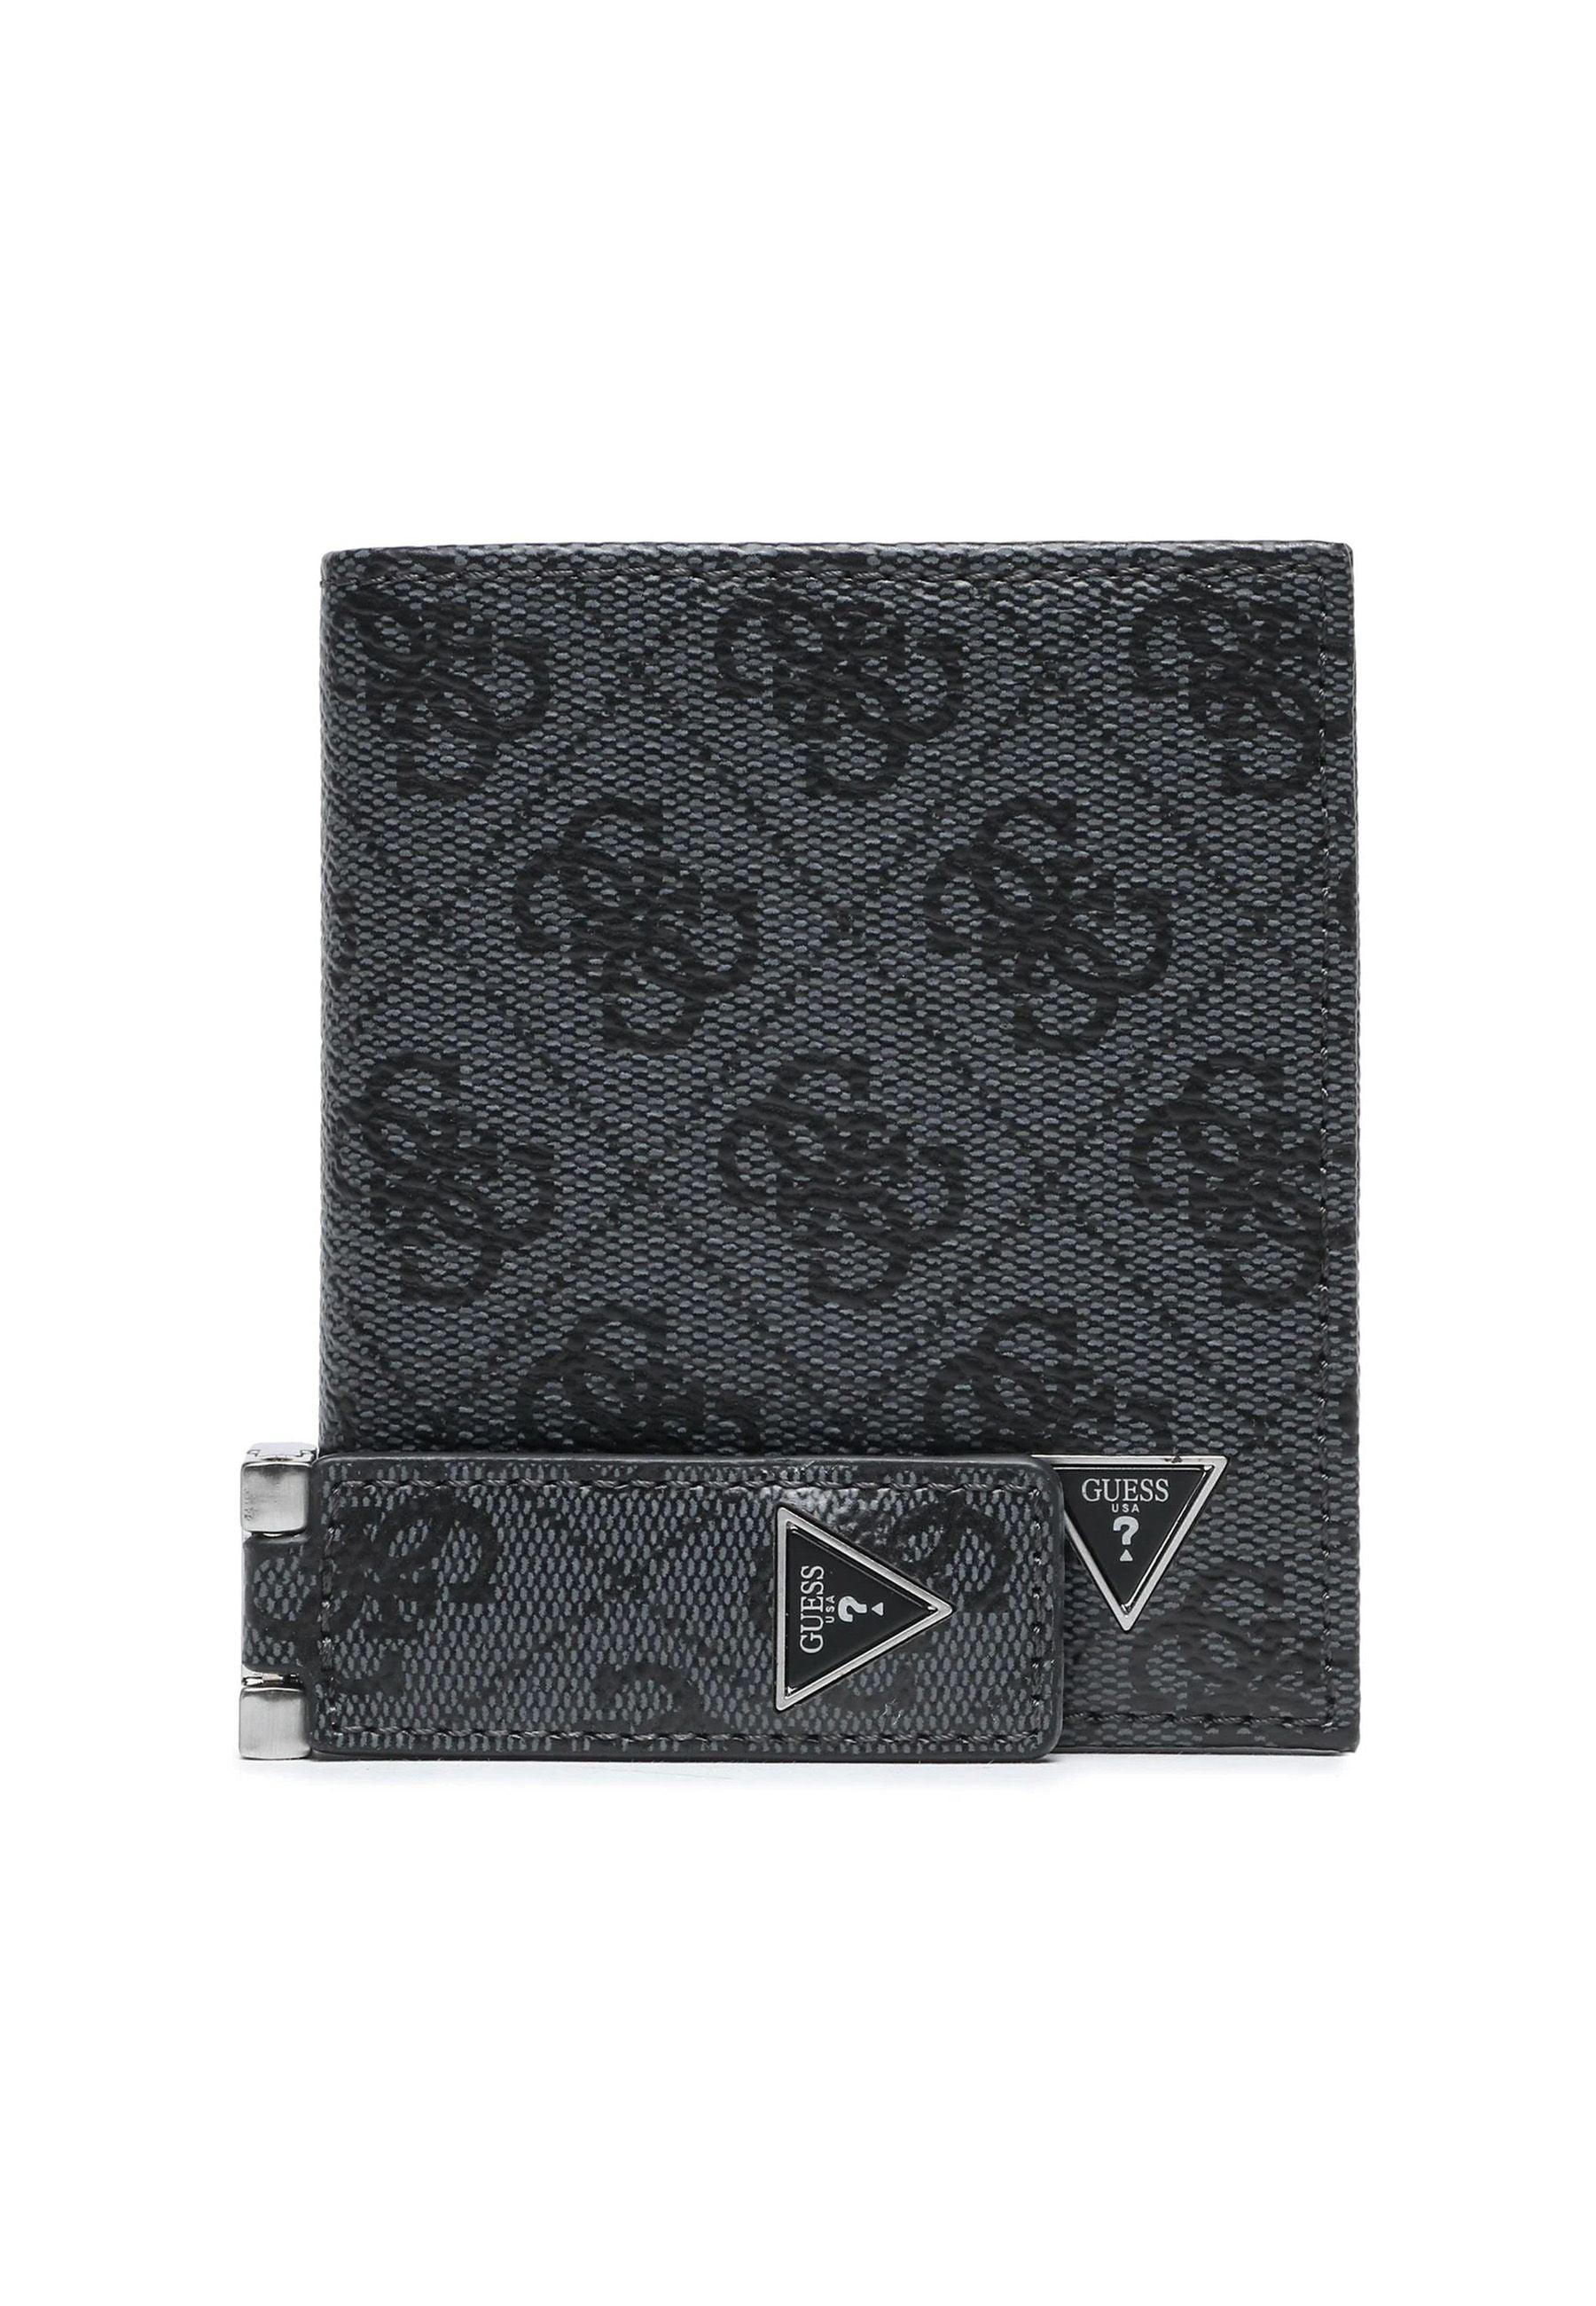 GUESS Gift Box Cofanetto Uomo Black GFBOXMP3301 - Sandrini Calzature e Abbigliamento